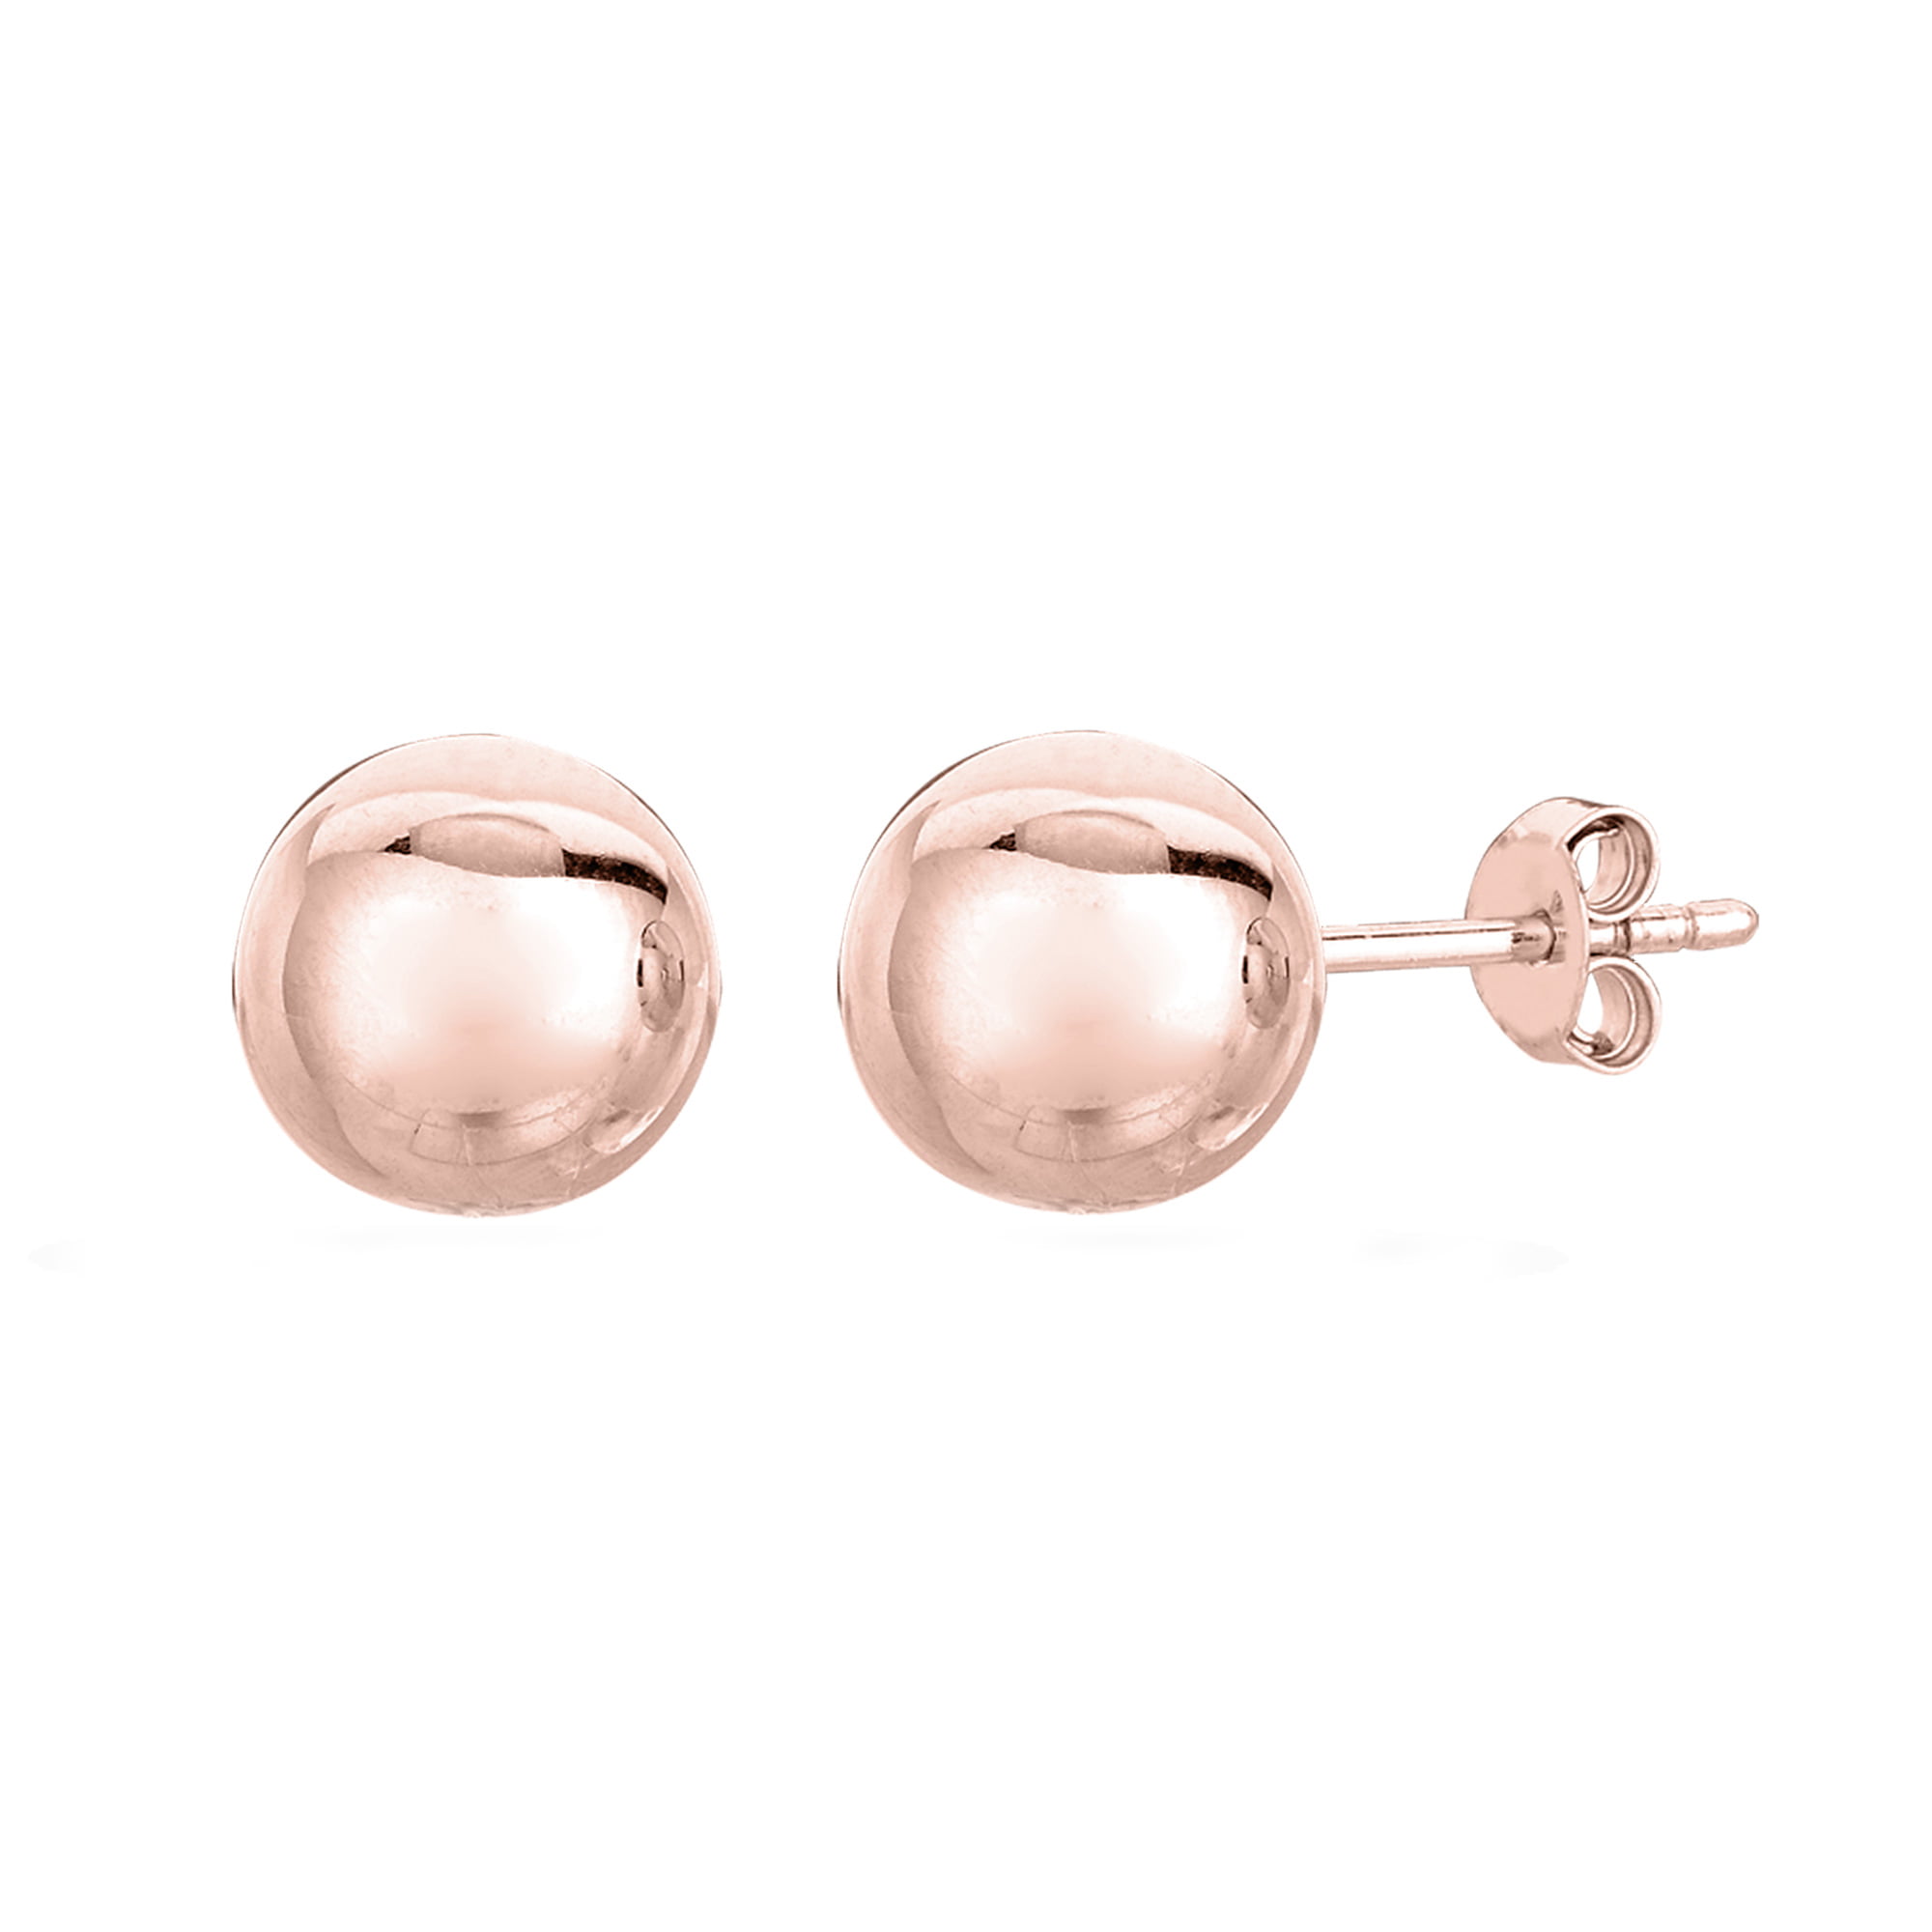 14k rose gold earrings